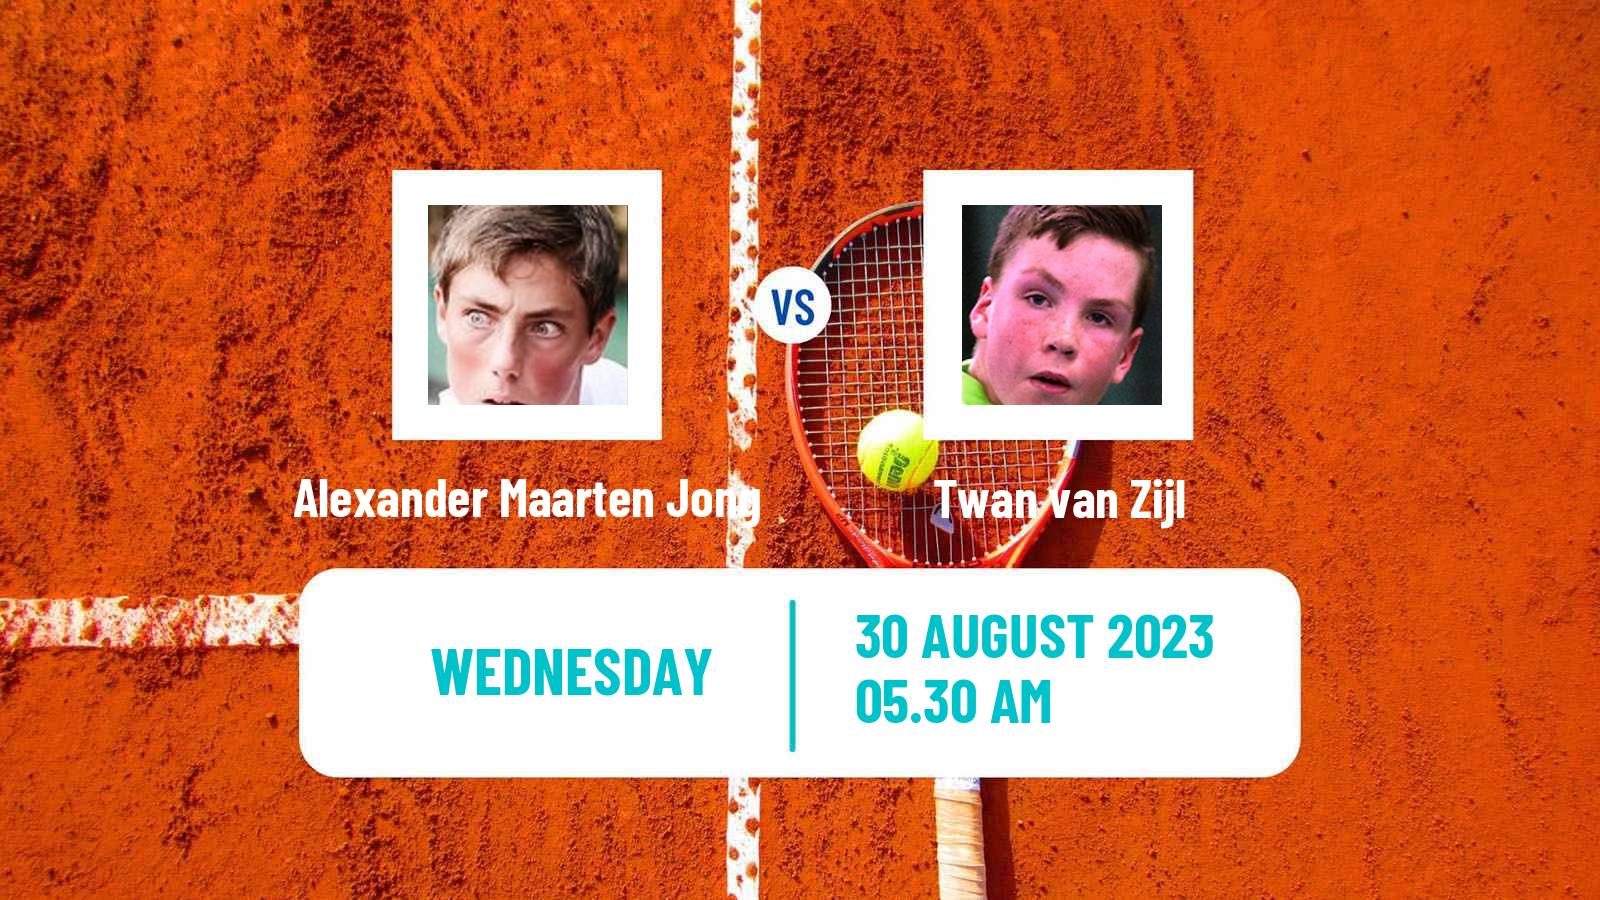 Tennis ITF M25 Oldenzaal Men Alexander Maarten Jong - Twan van Zijl